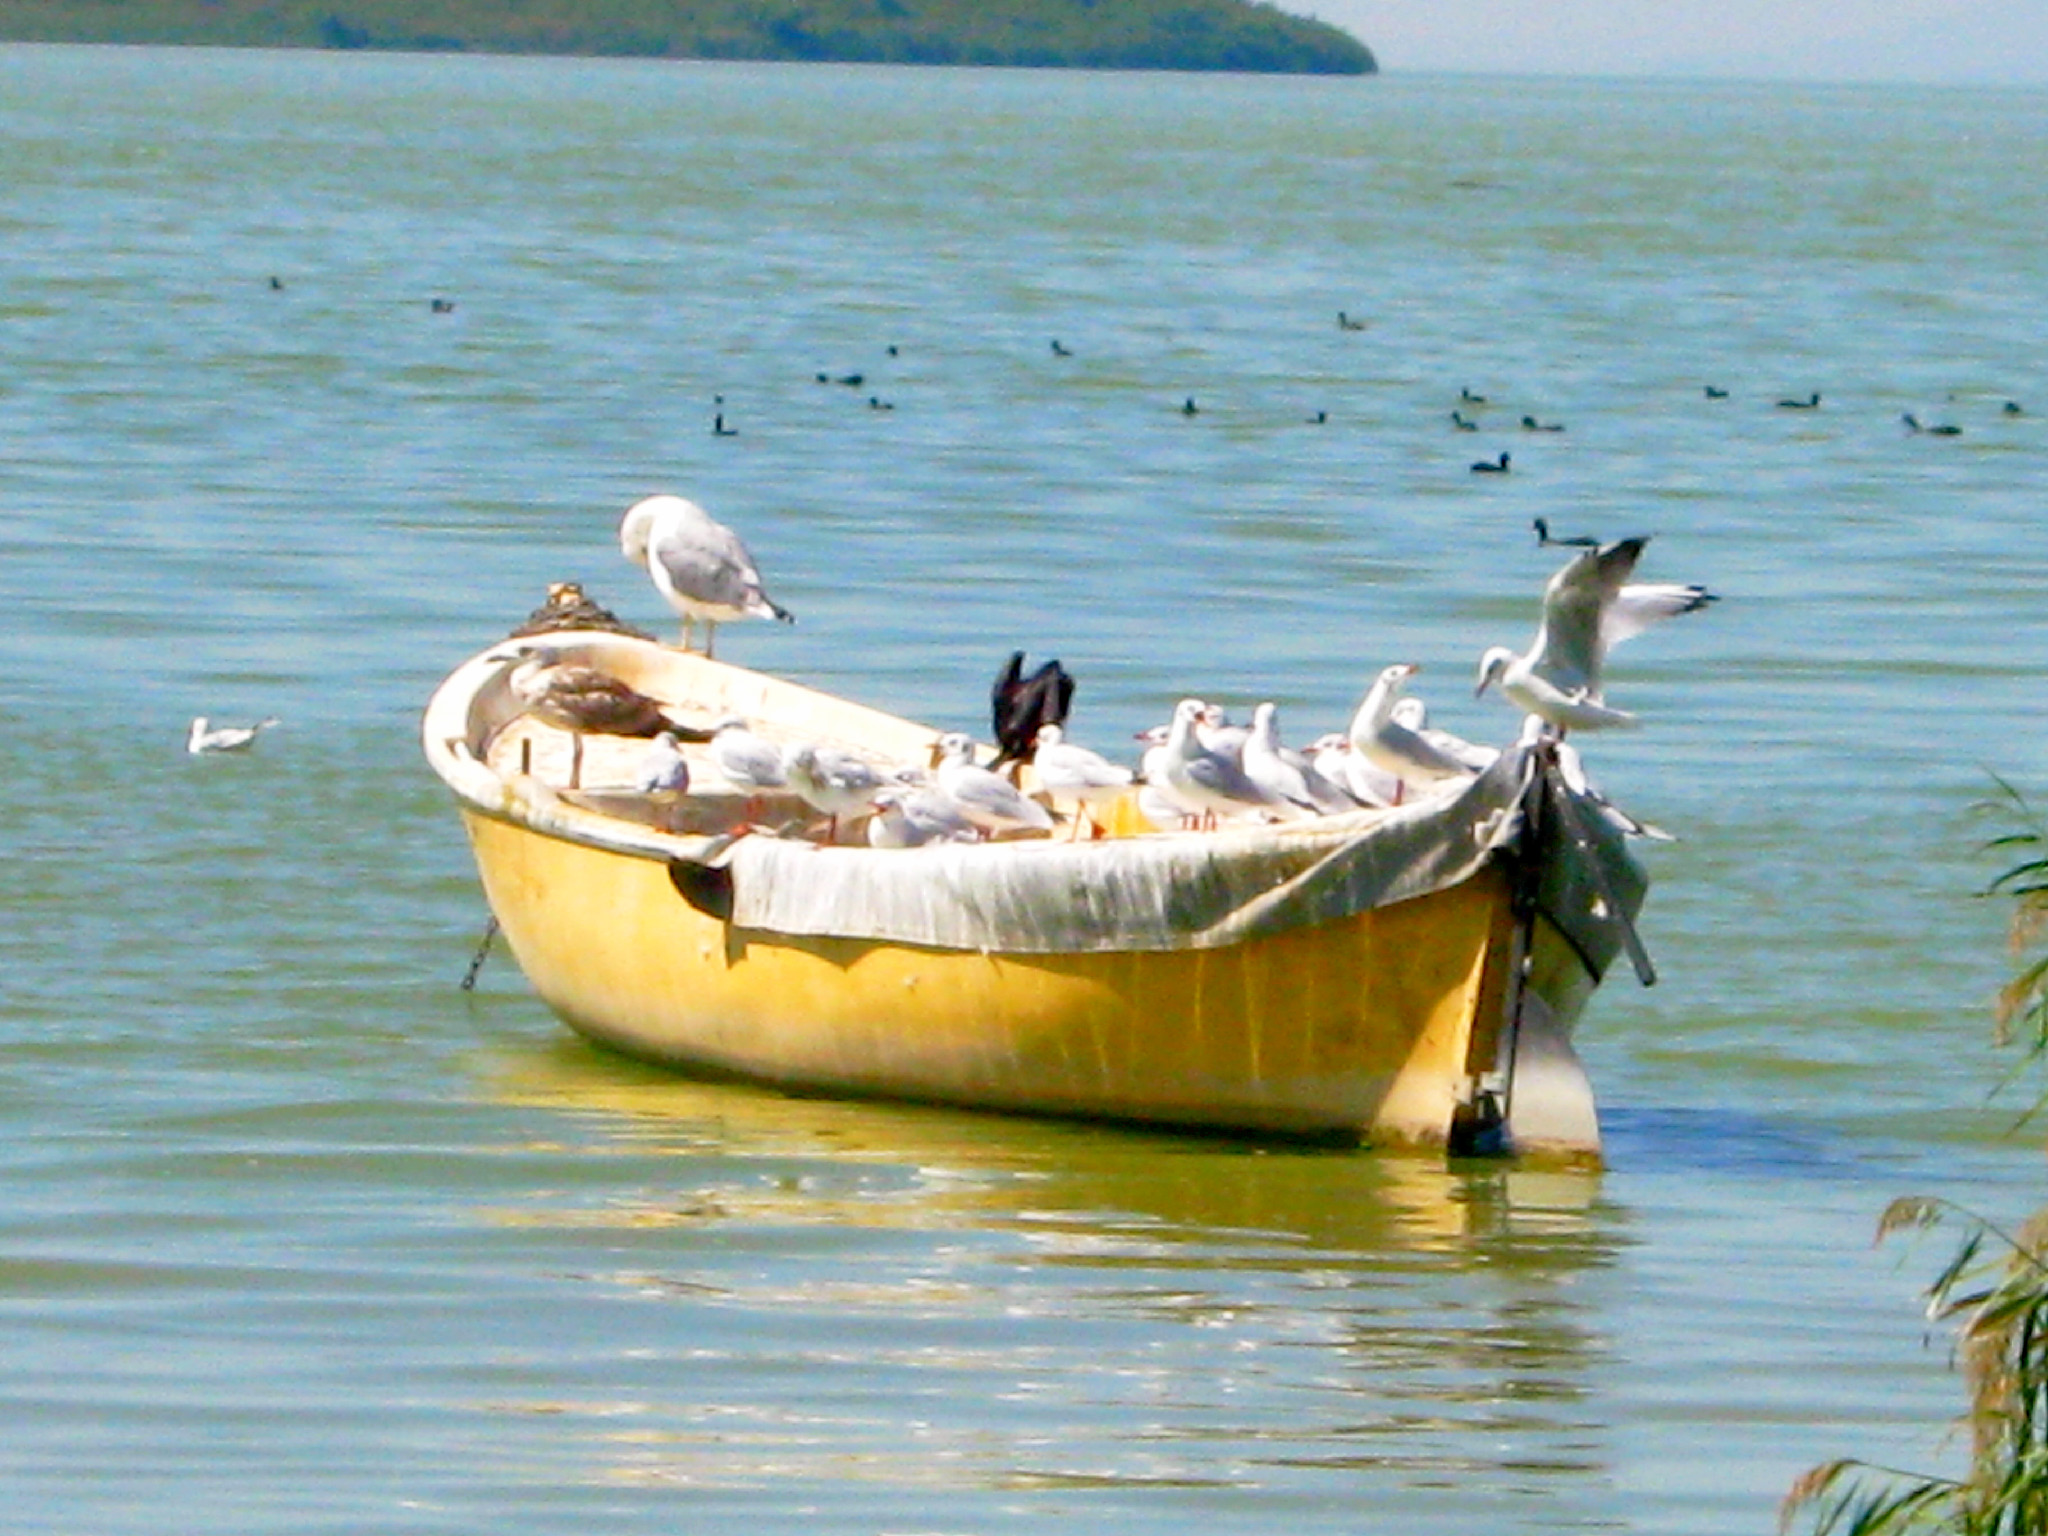 Boat in the sea photo